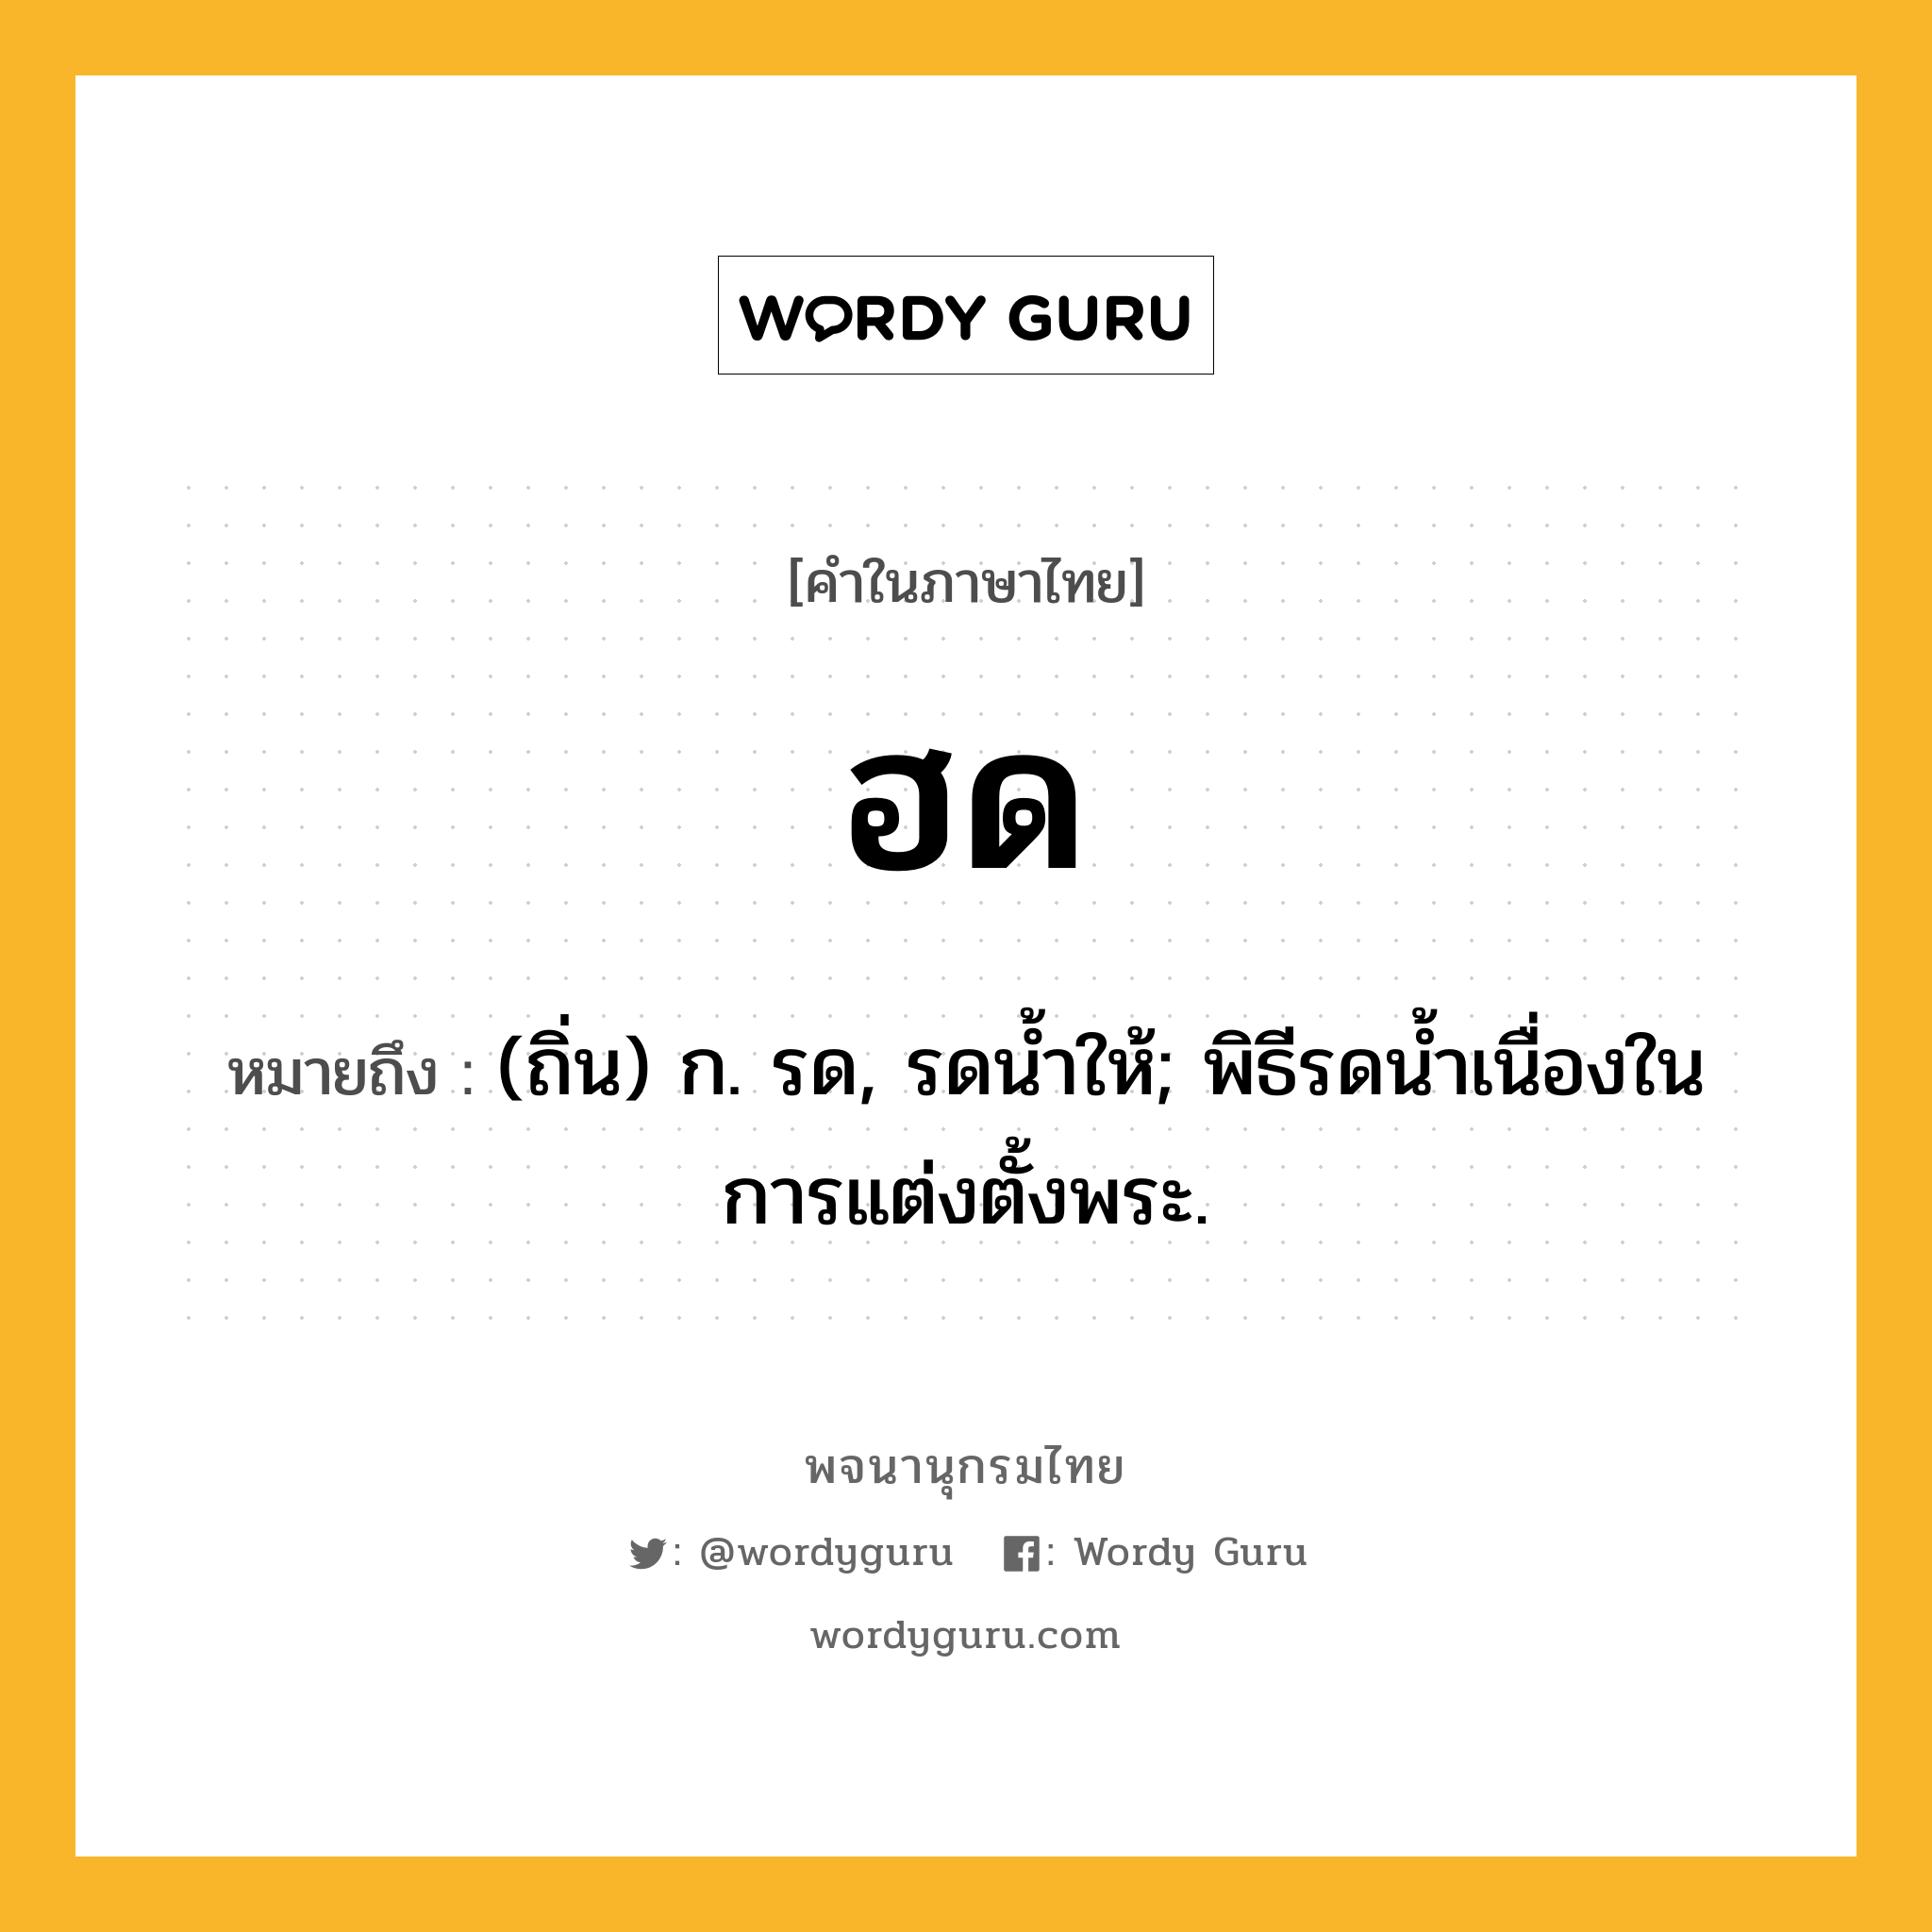 ฮด ความหมาย หมายถึงอะไร?, คำในภาษาไทย ฮด หมายถึง (ถิ่น) ก. รด, รดนํ้าให้; พิธีรดนํ้าเนื่องในการแต่งตั้งพระ.